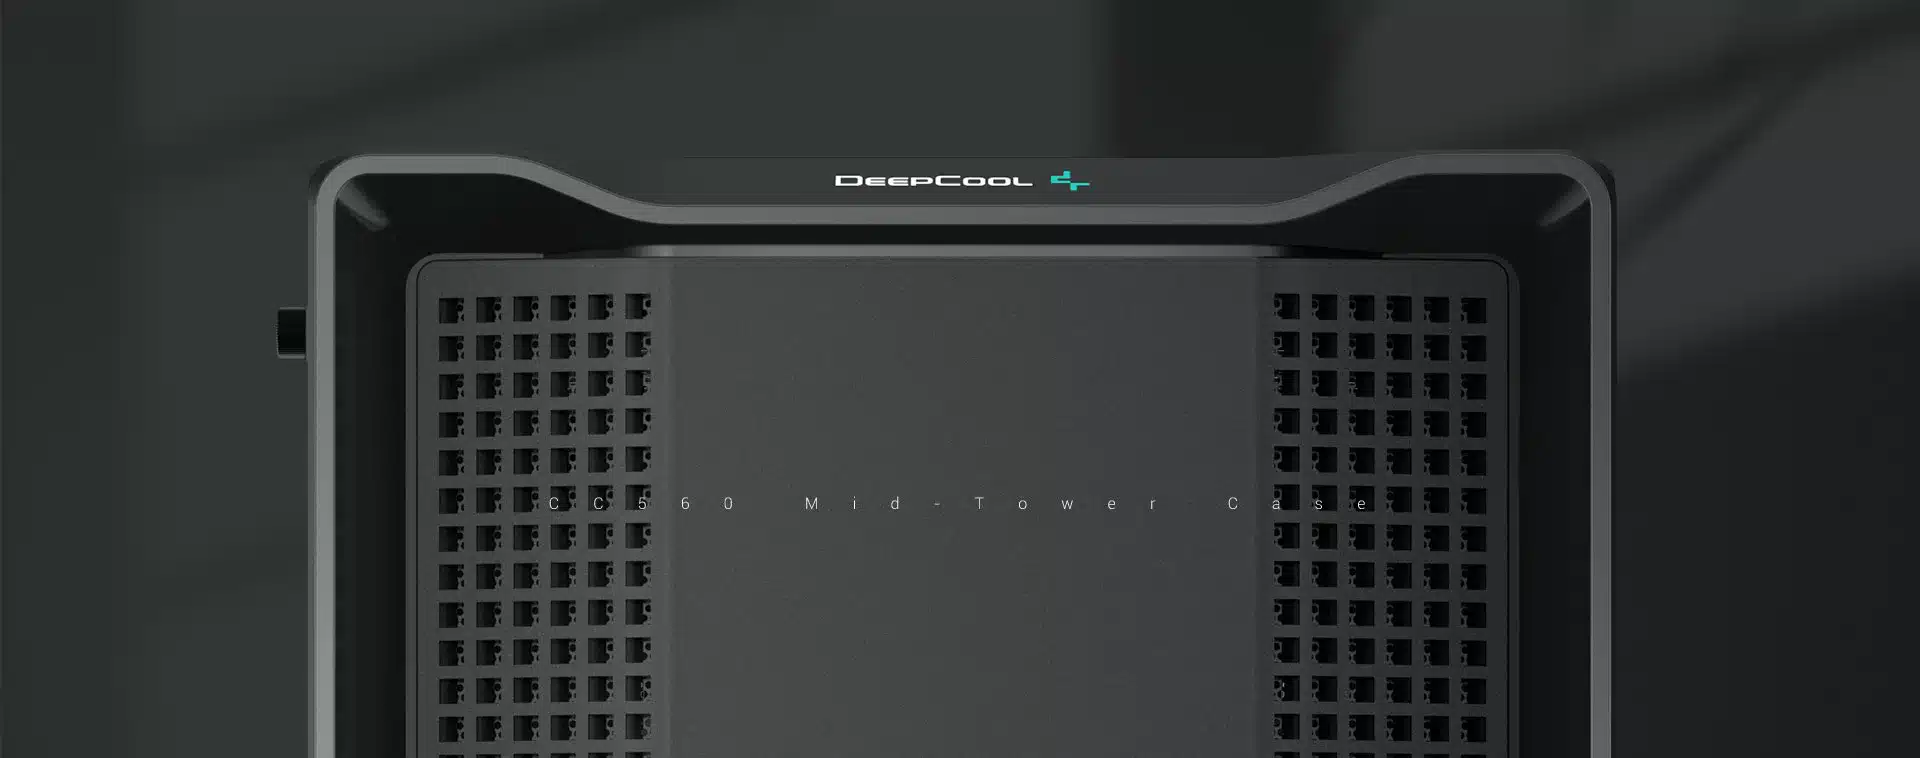 DeepCool CC560